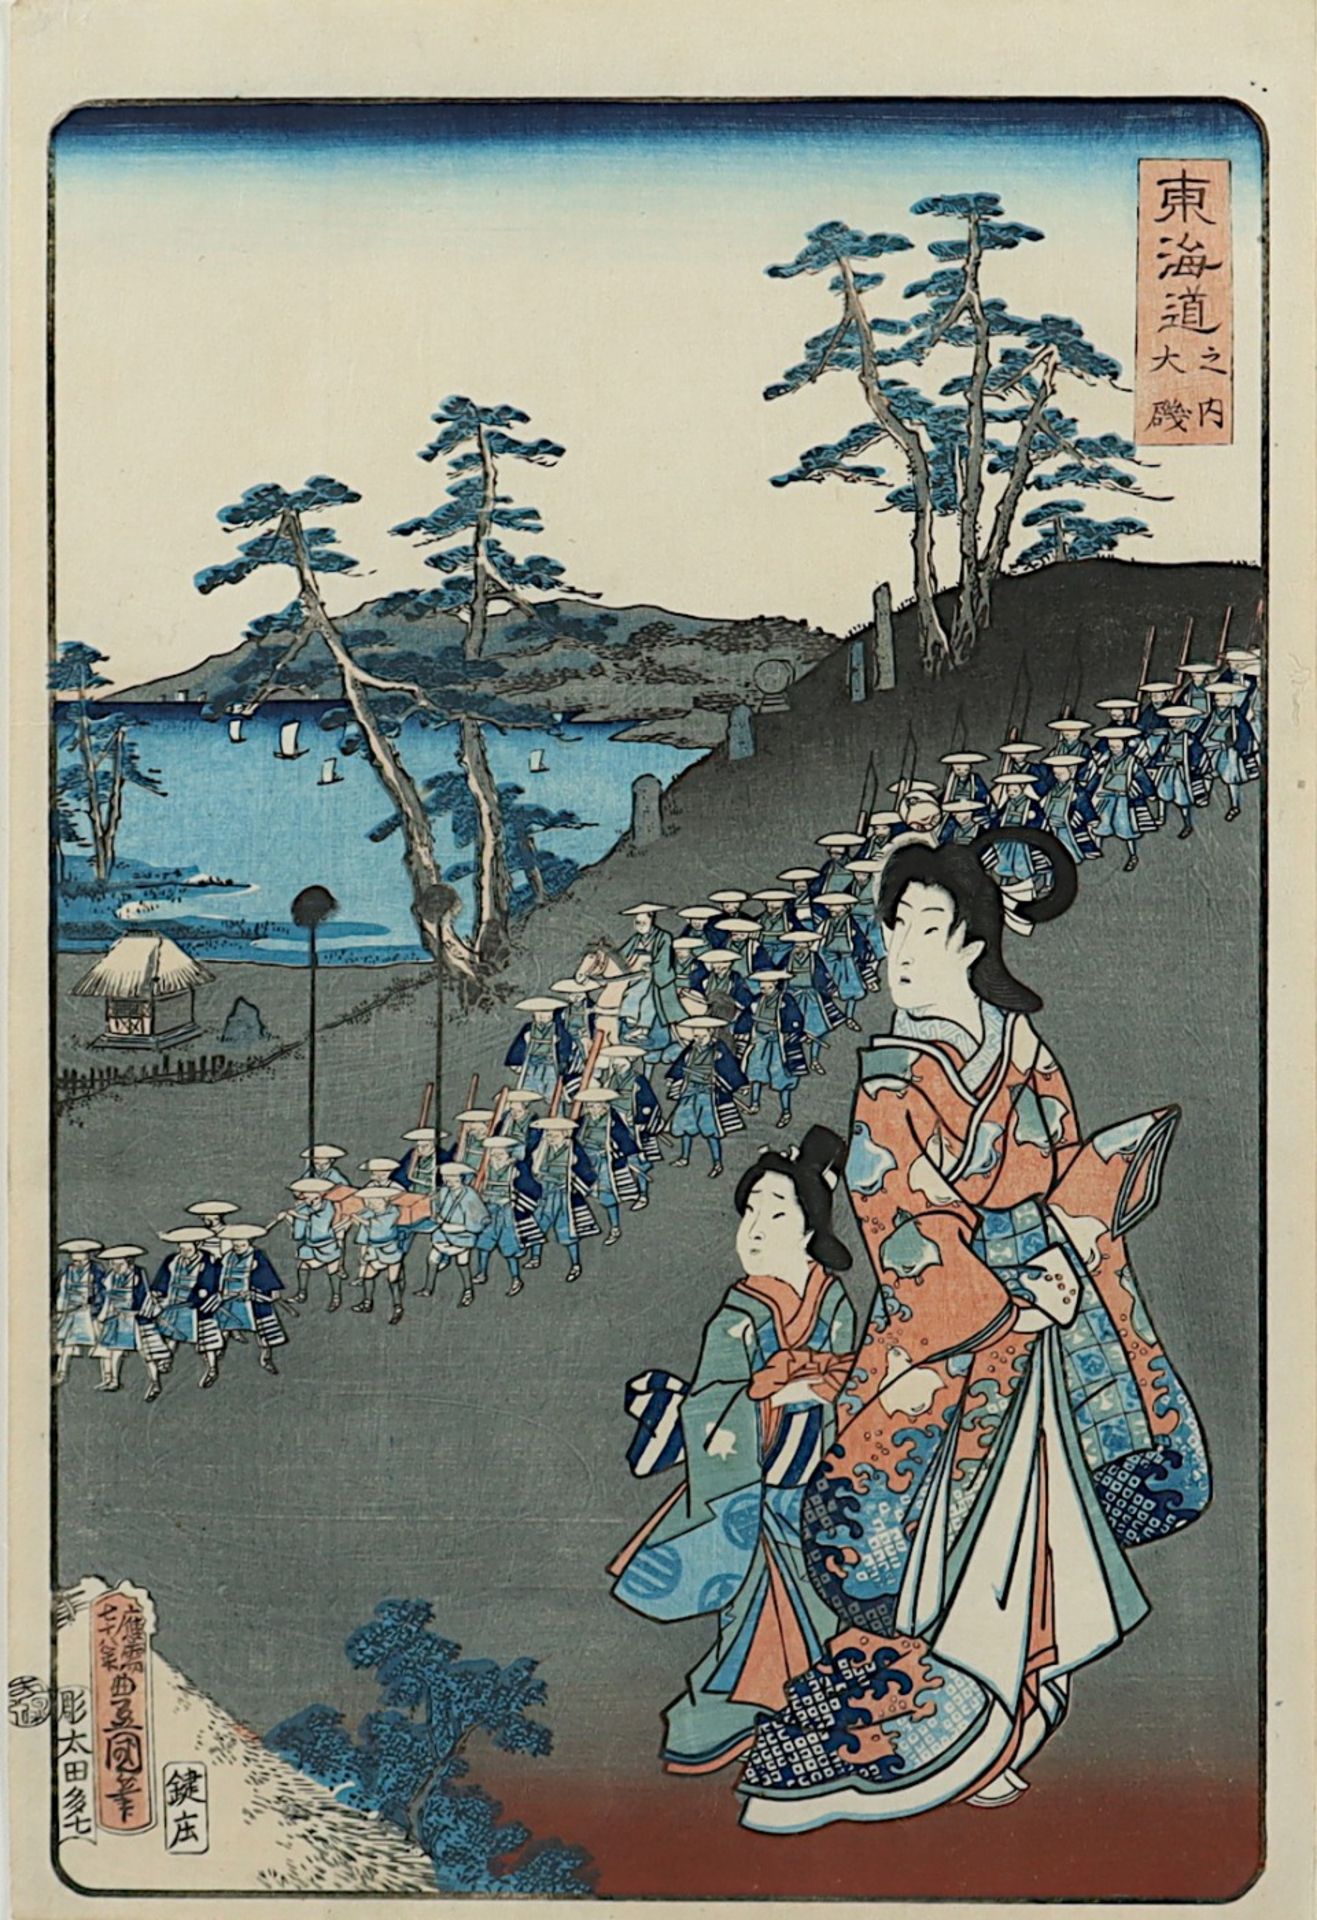 UTAGAWA KUNISADA (1788-1864), "Ôiso",